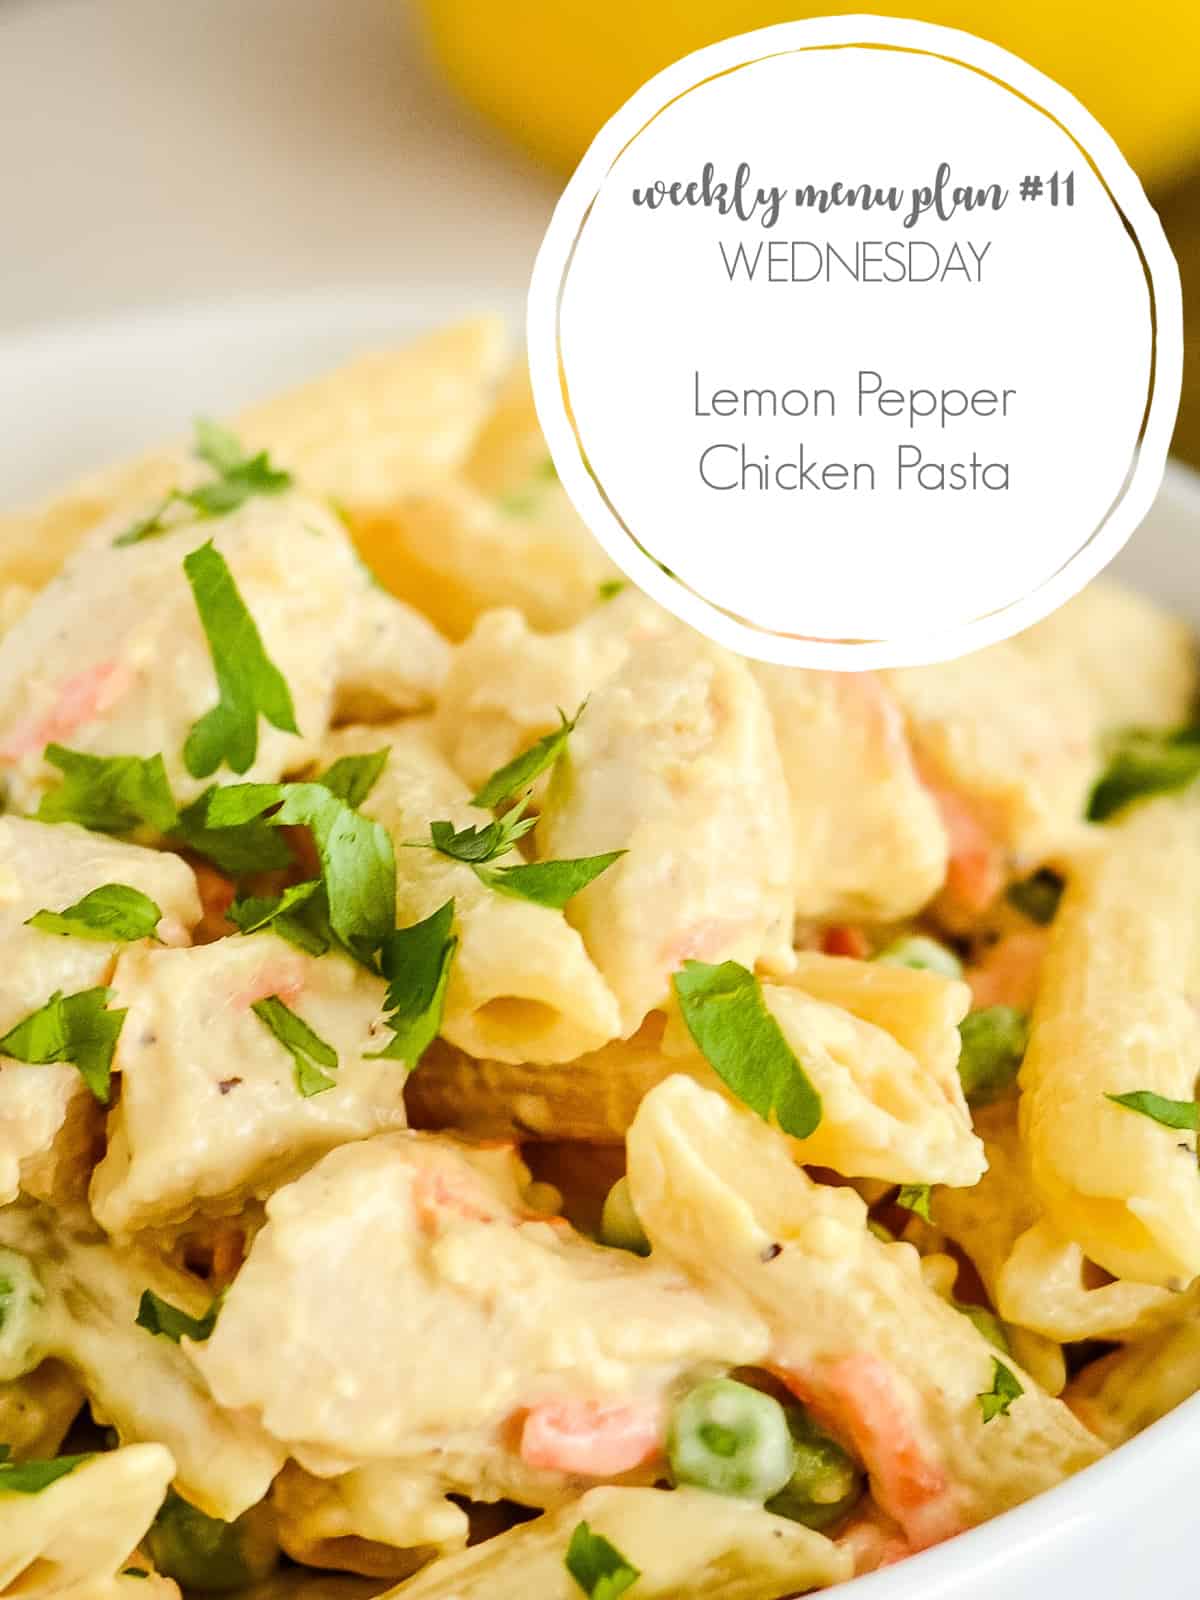 lemon pepper chicken pasta for meal plan #11